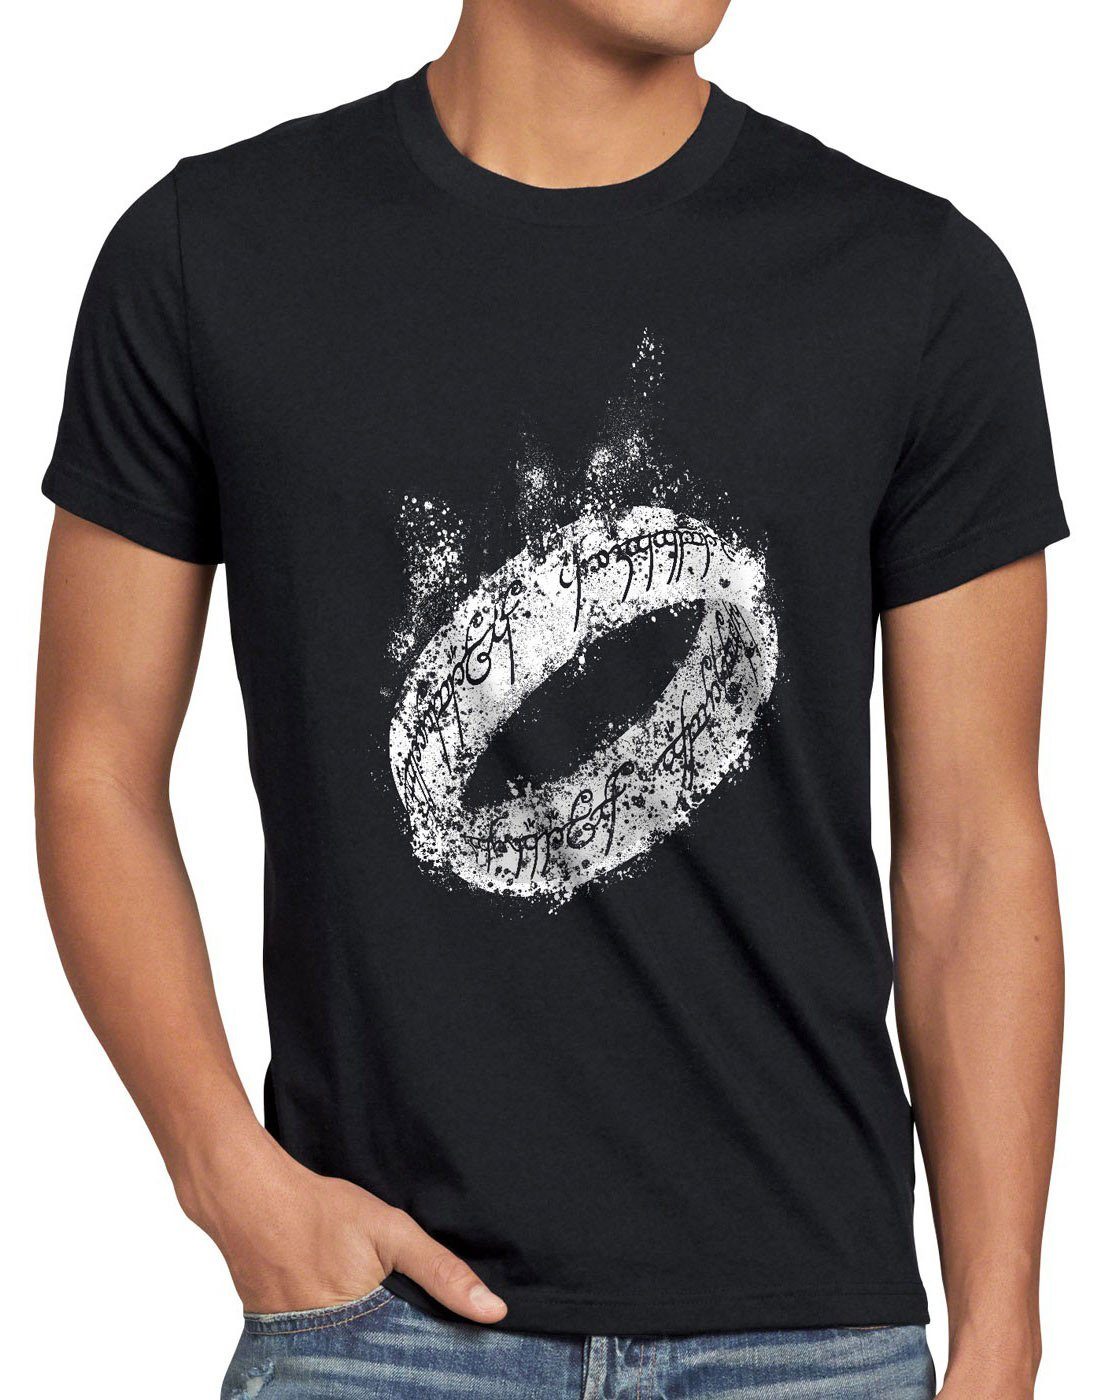 T-Shirt Der Ring style3 Herren Neuseeland schwarz ringe Lord frodo Auenland Print-Shirt Eine Triologie Herr